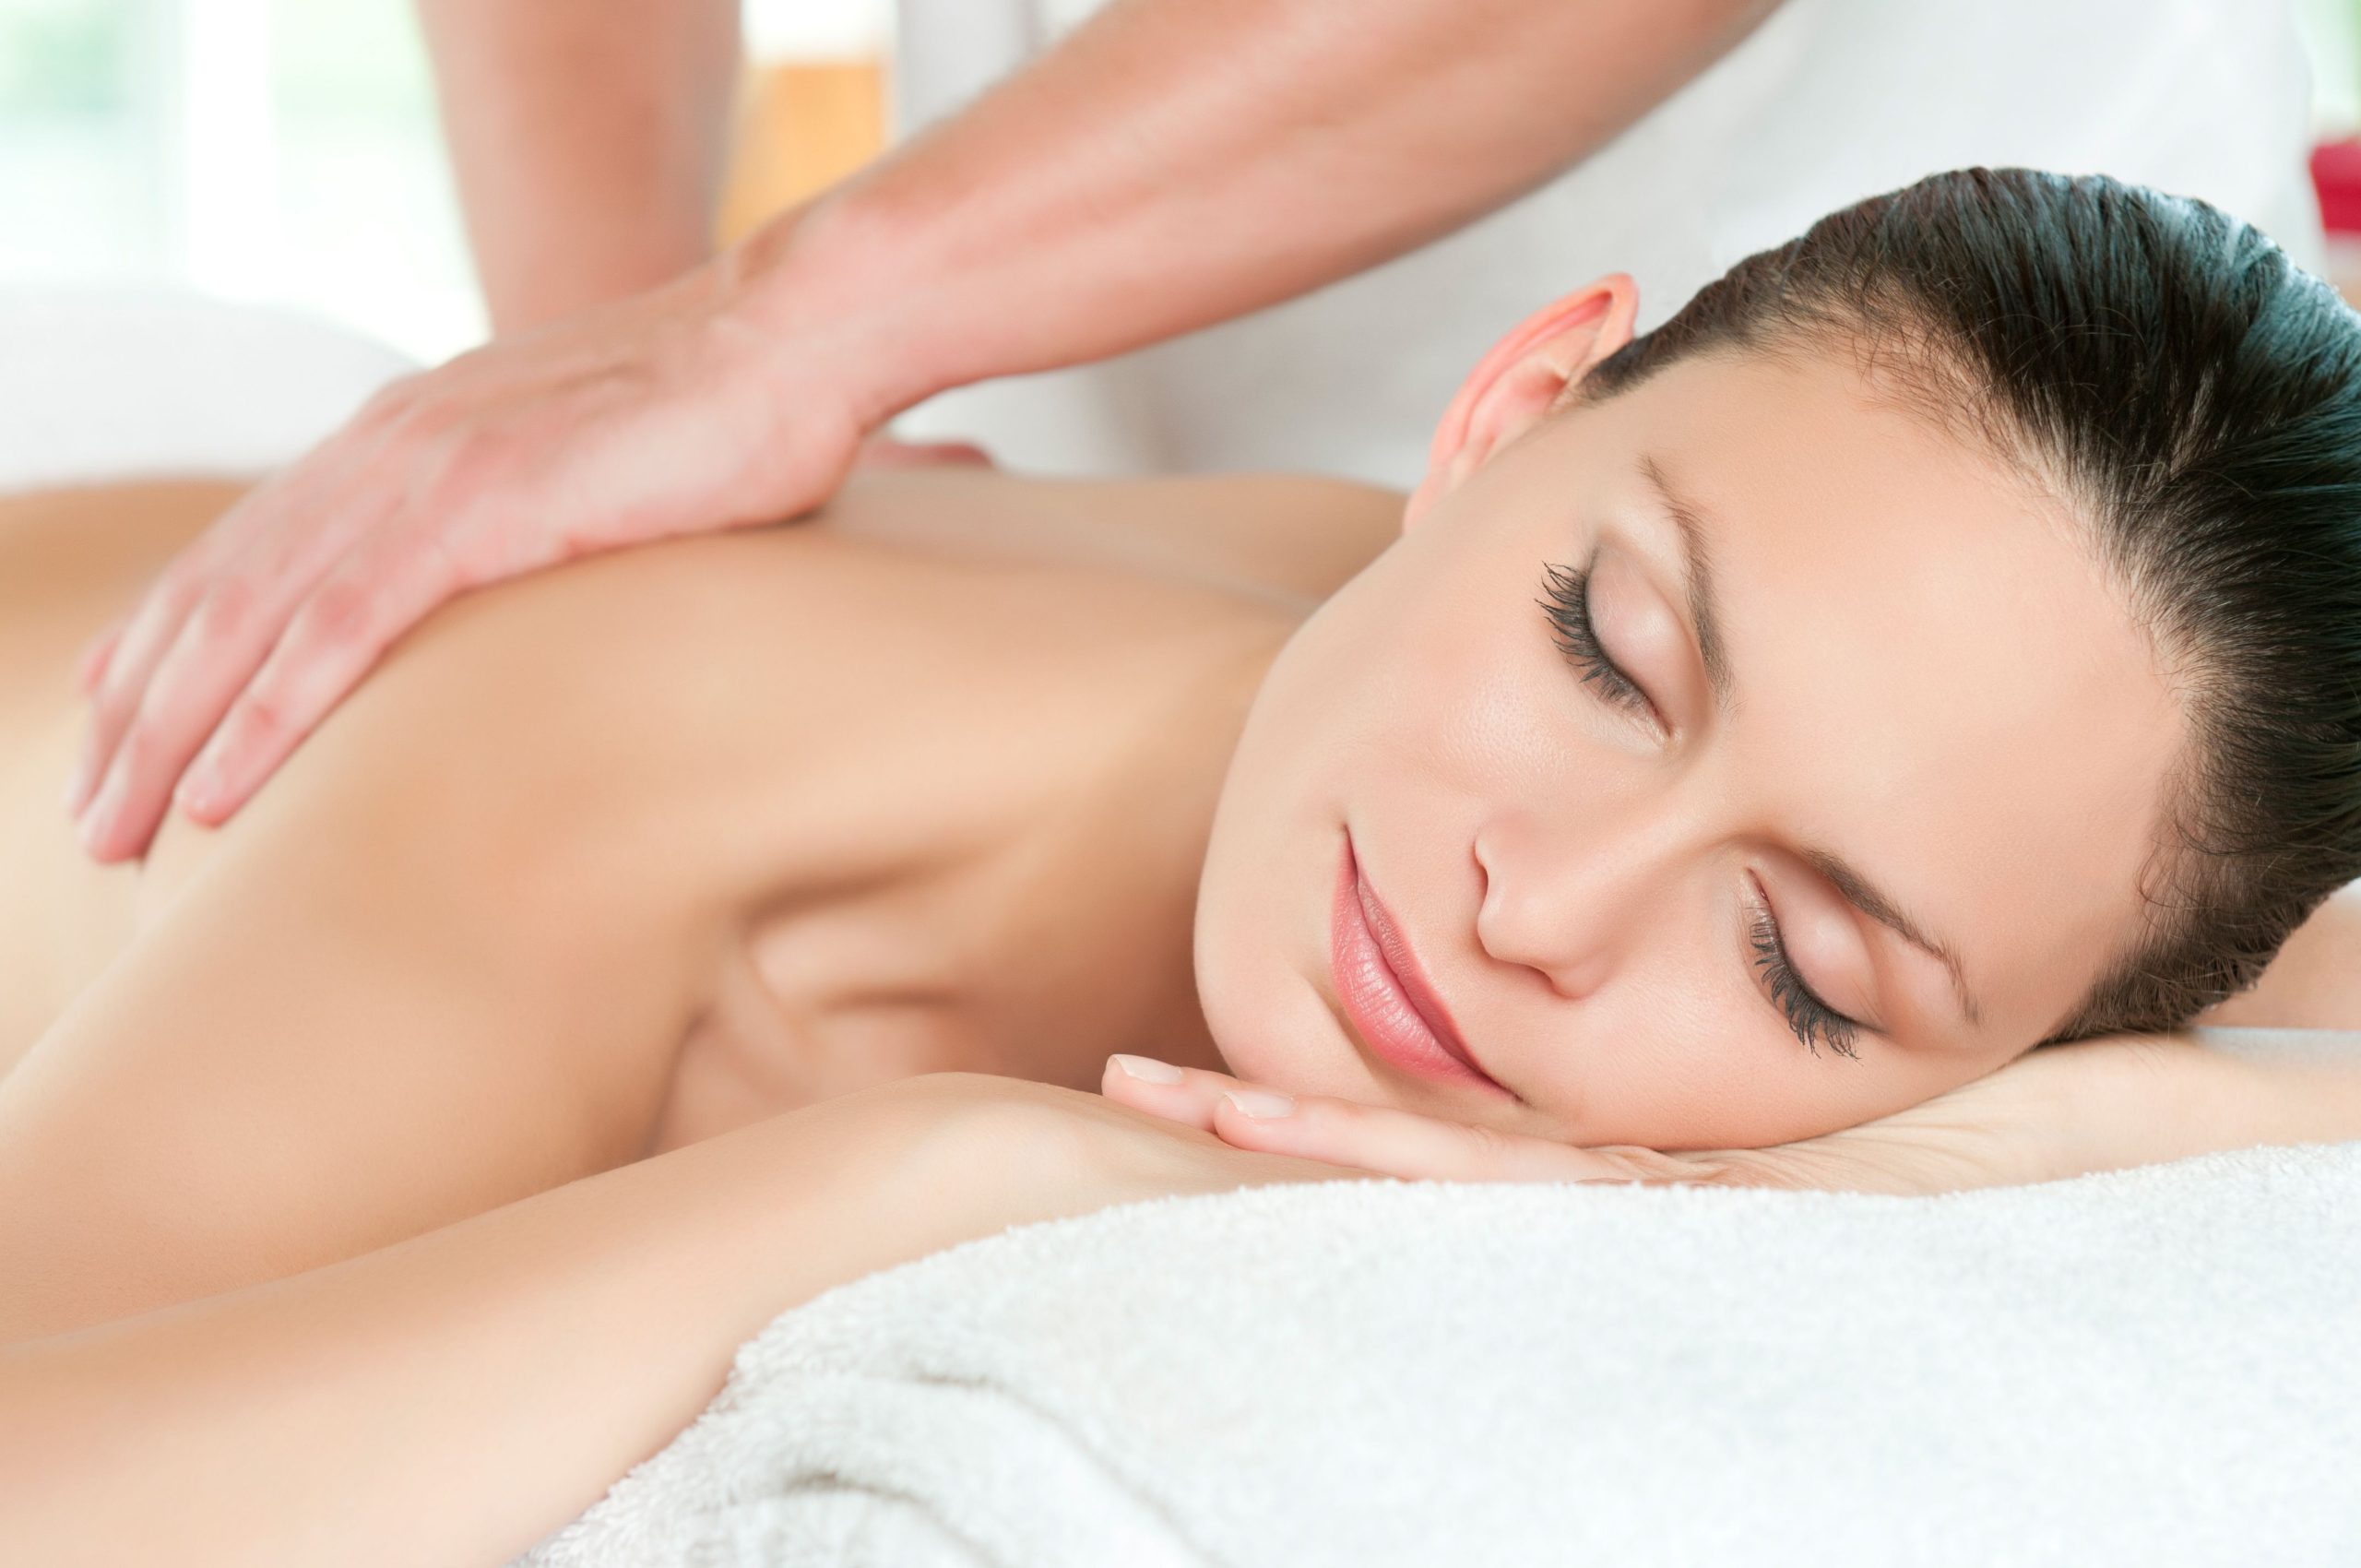 Relaxation Massage Therapist Near Snohomish County, WA